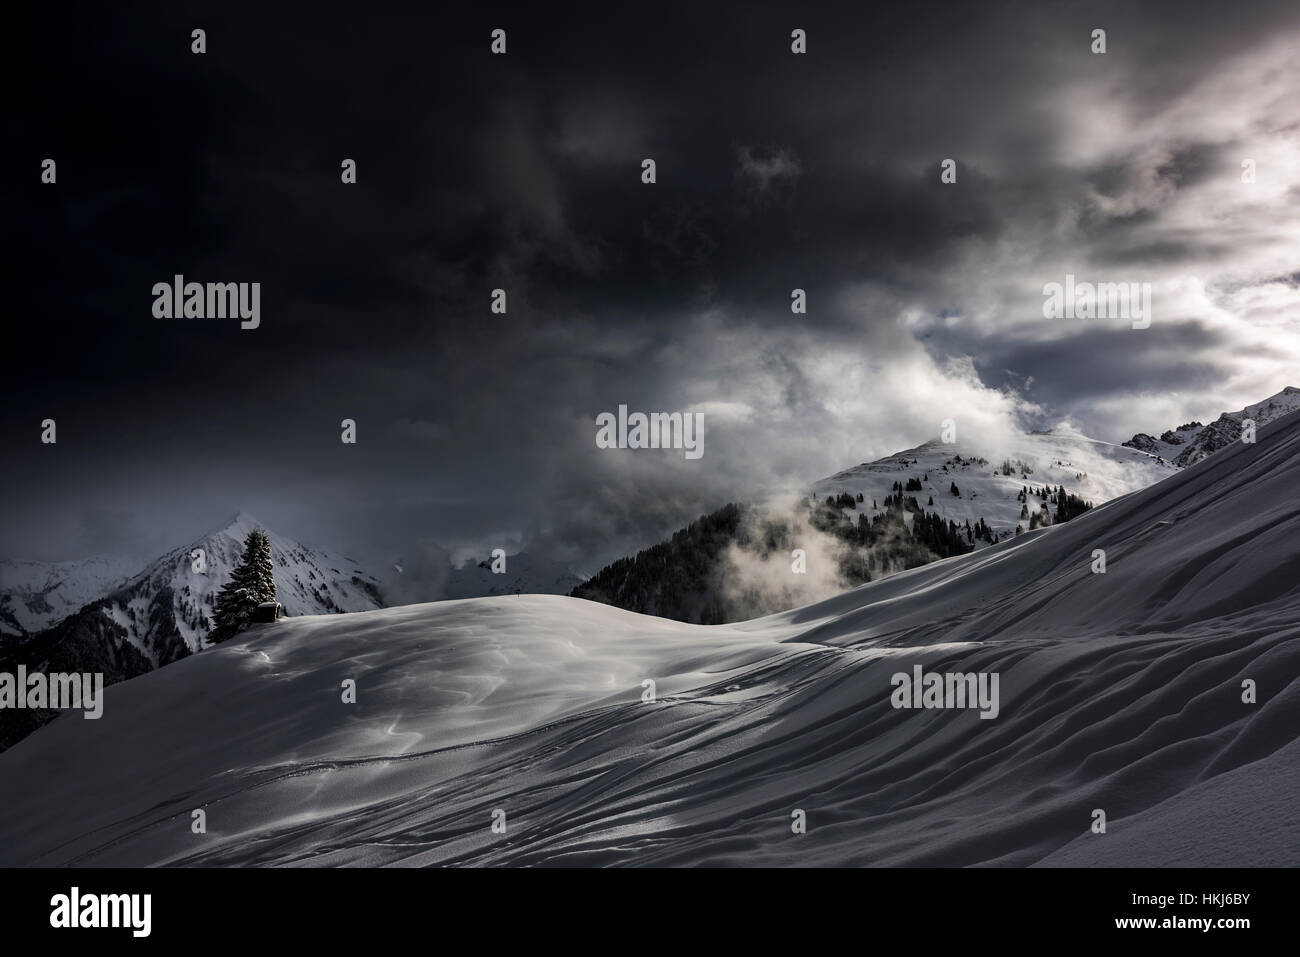 Snowy mountain landscape, dramatic light with dark clouds, Hittisau, Bregenz Forest, Vorarlberg, Austria Stock Photo